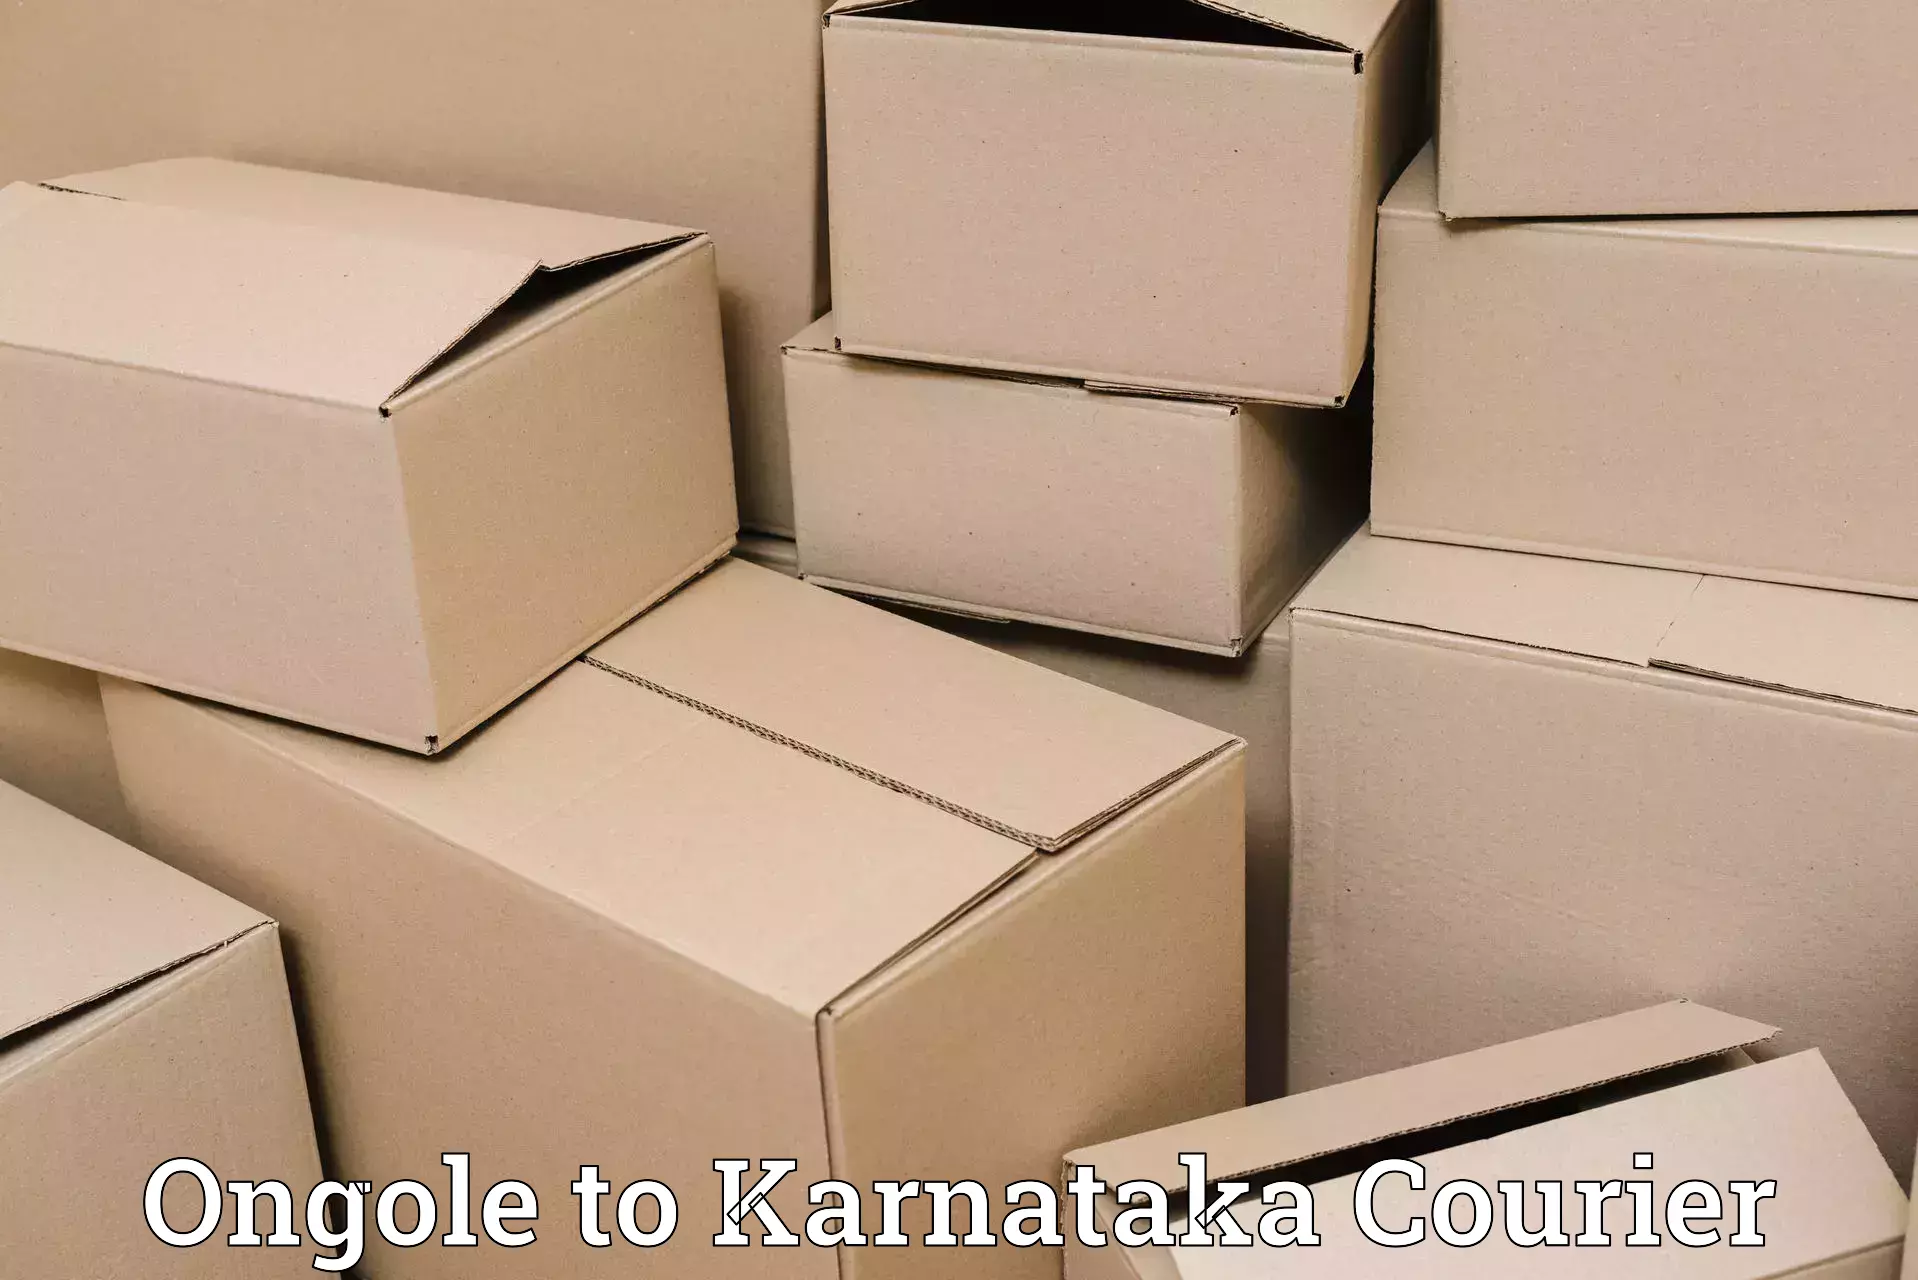 Efficient parcel transport Ongole to Bangarapet